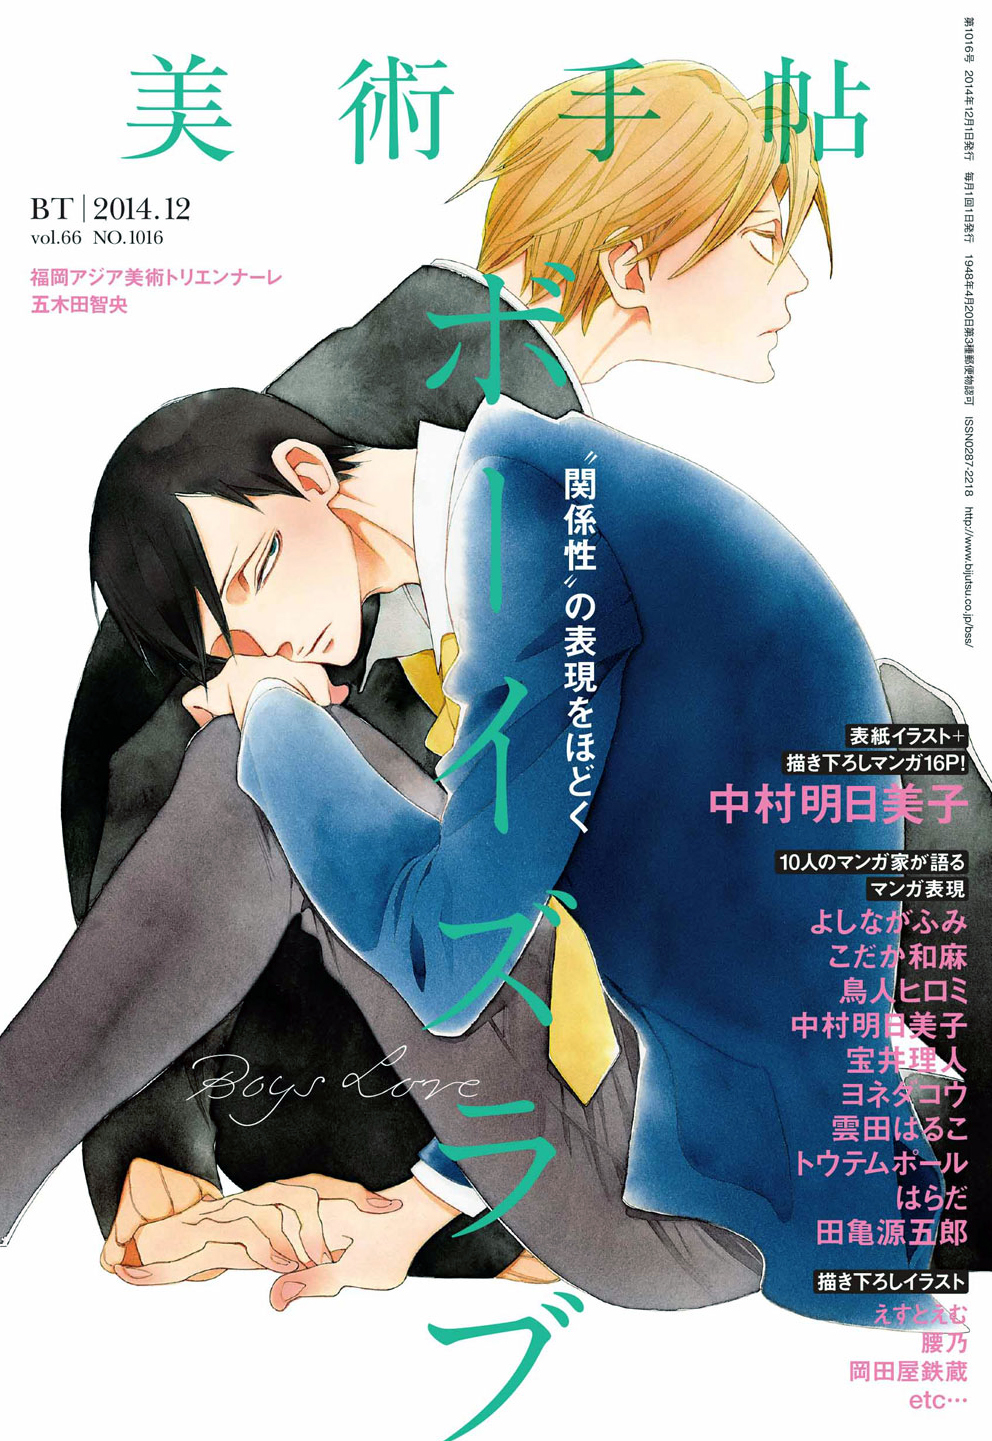 Любовь мальчишек Манга. Накамура Асумико Манга. Boys' Love Manga книга. Boys Love любовь мальчишек. Школа для мальчиков манга